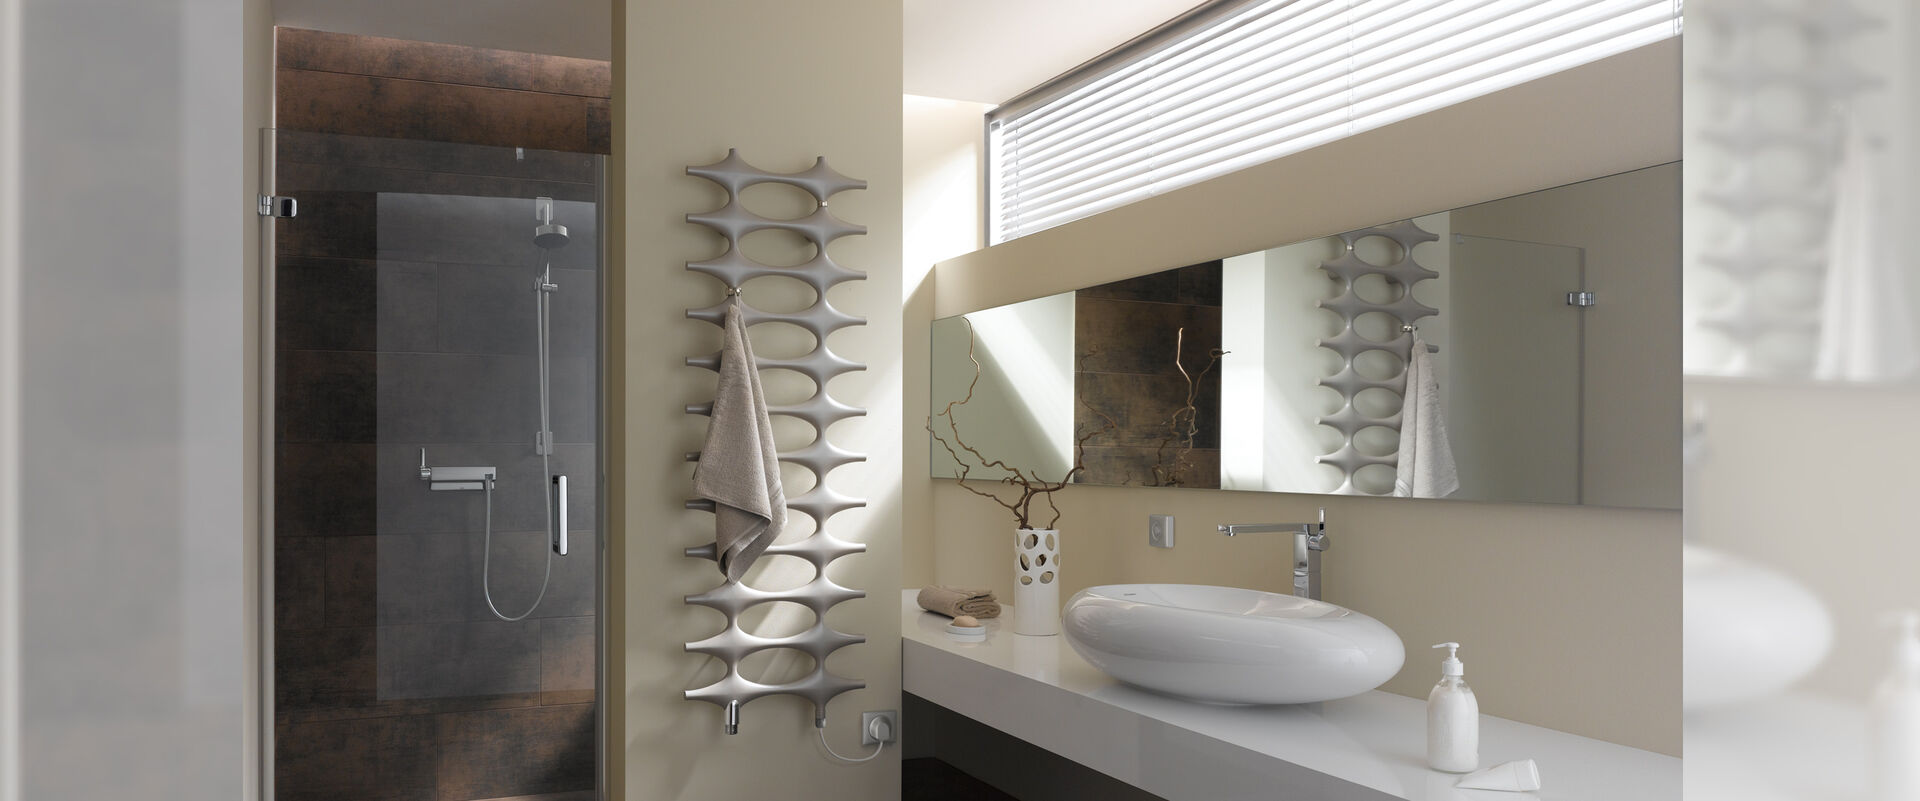 Badezimmer mit Designheizkörper im organischen Design. Dusche und Waschplatz.